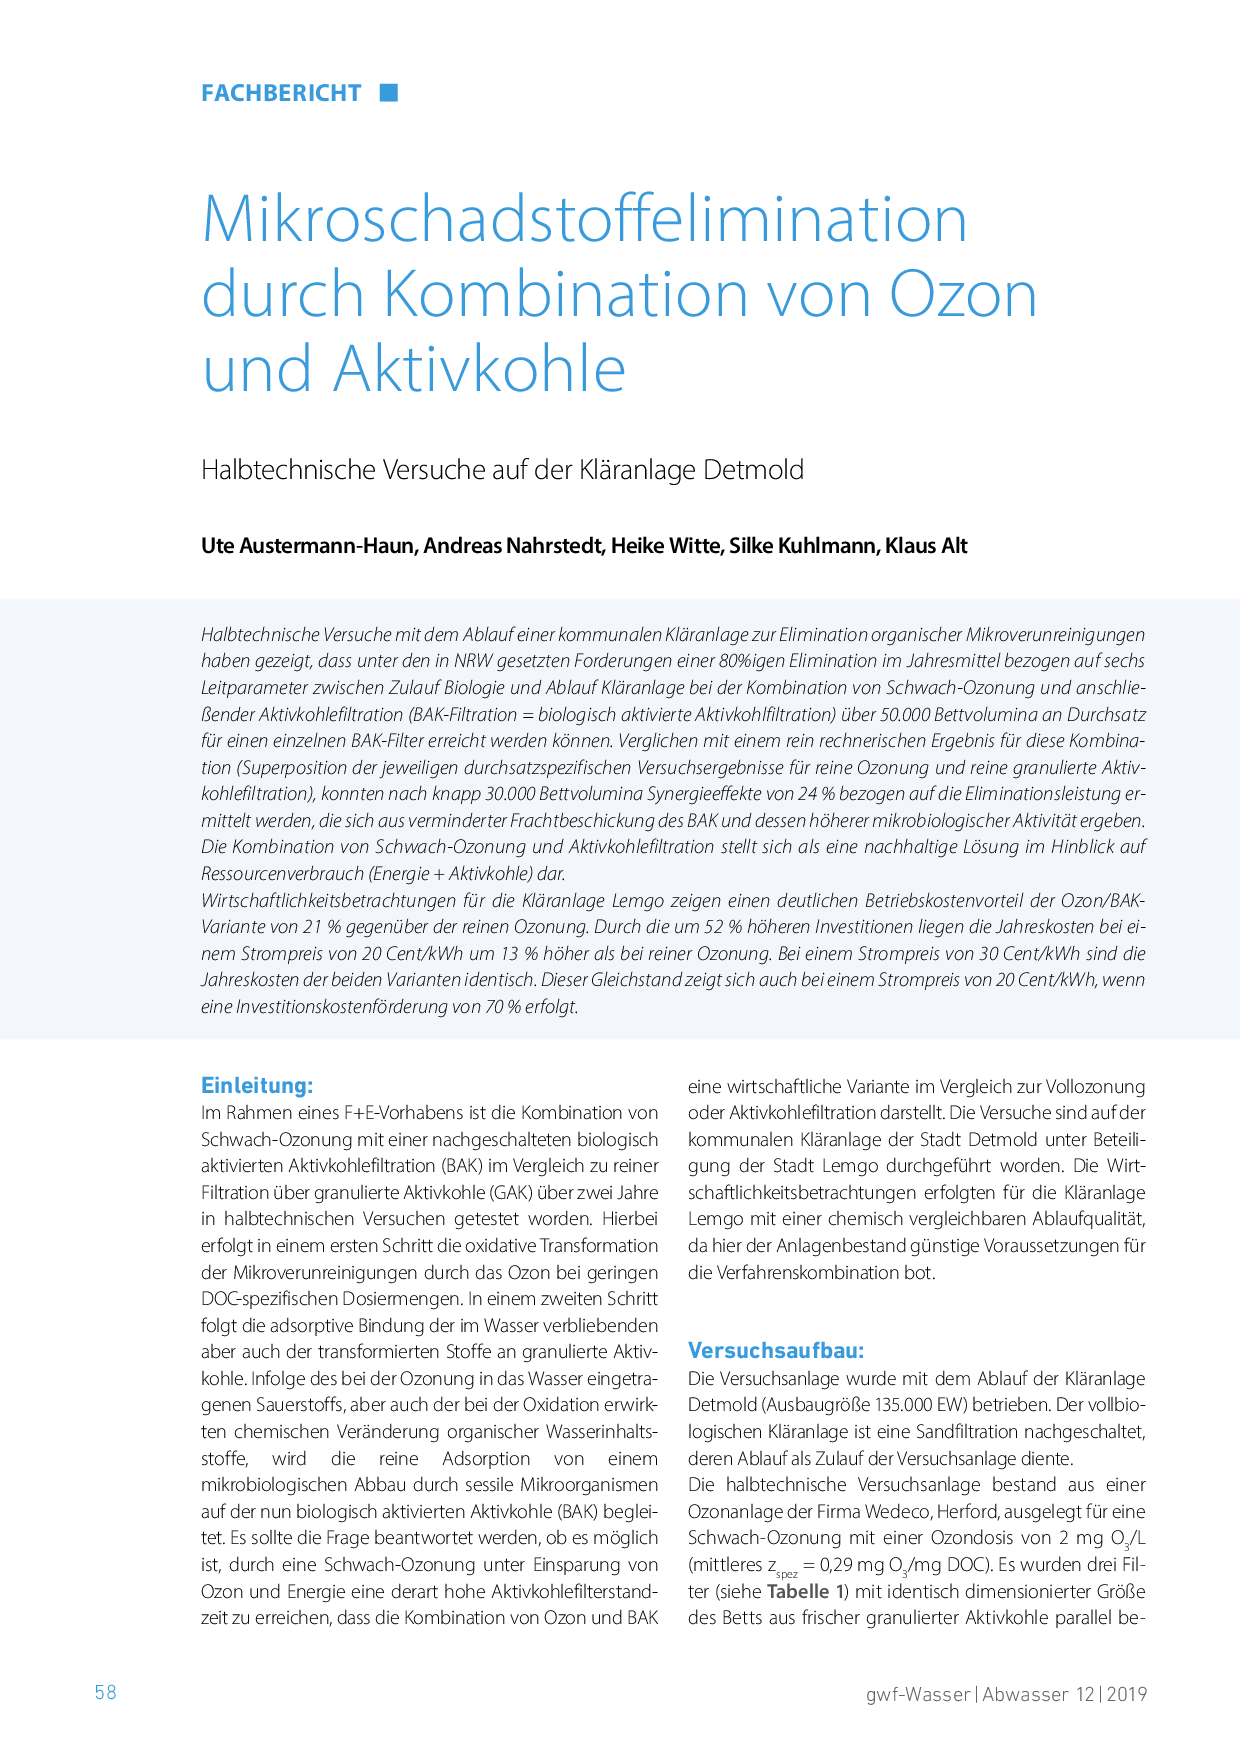 Mikroschadstoffelimination durch Kombination von Ozon und Aktivkohle